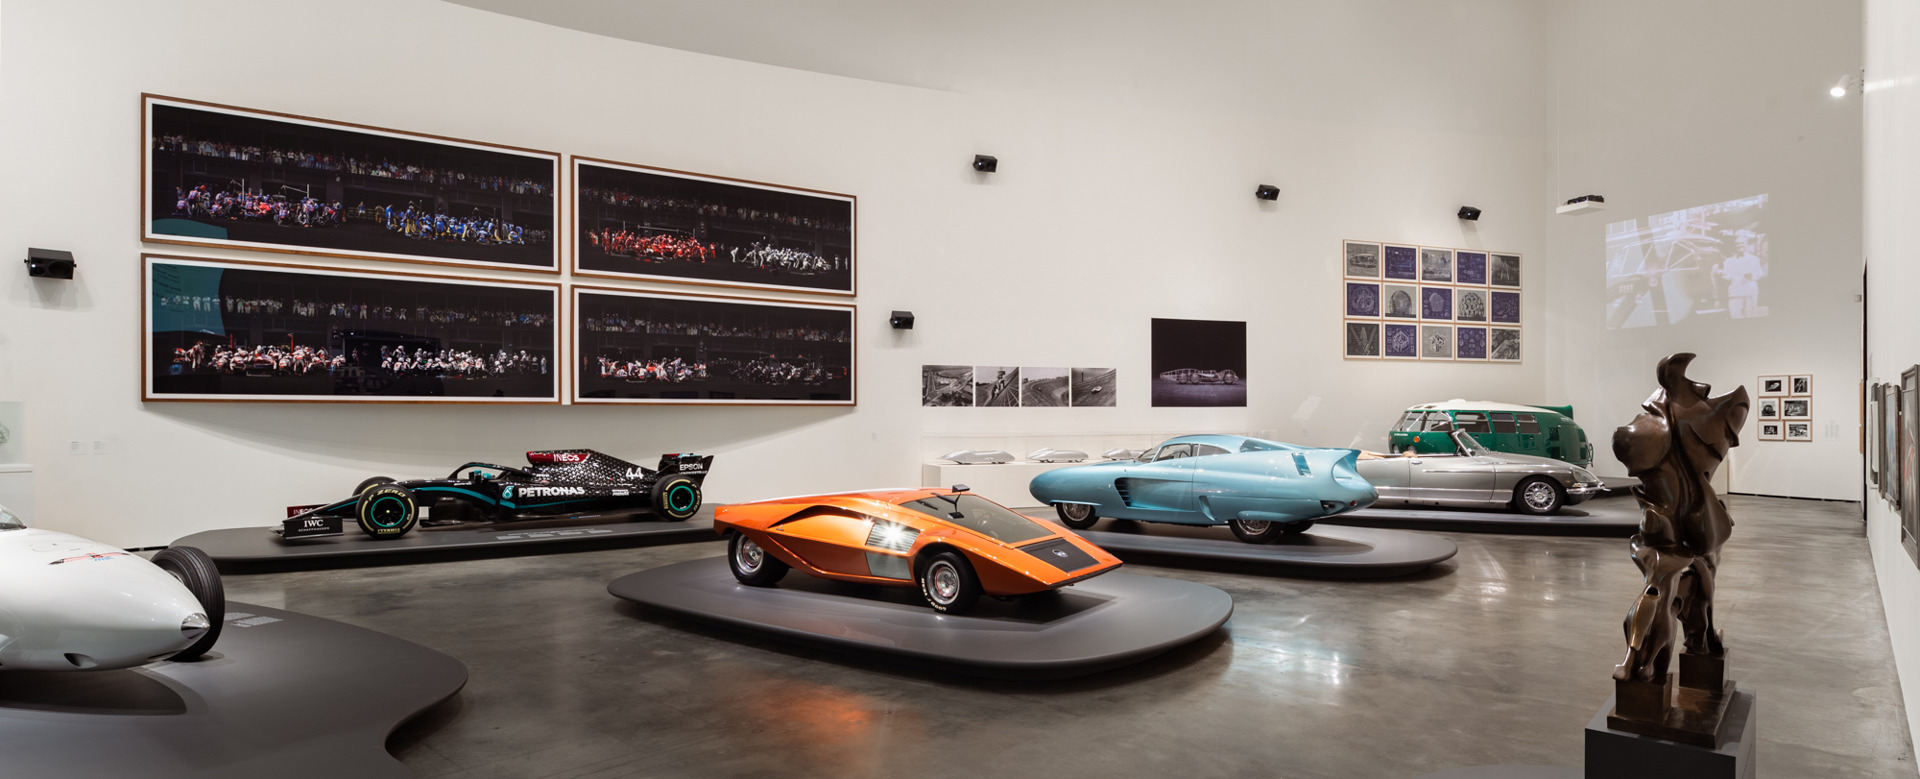 Sennheiser erweckt den Klang in der bahnbrechenden Automobilausstellung Motion. Autos, Art, Architecture im Guggenheim Museum Bilbao zum Leben